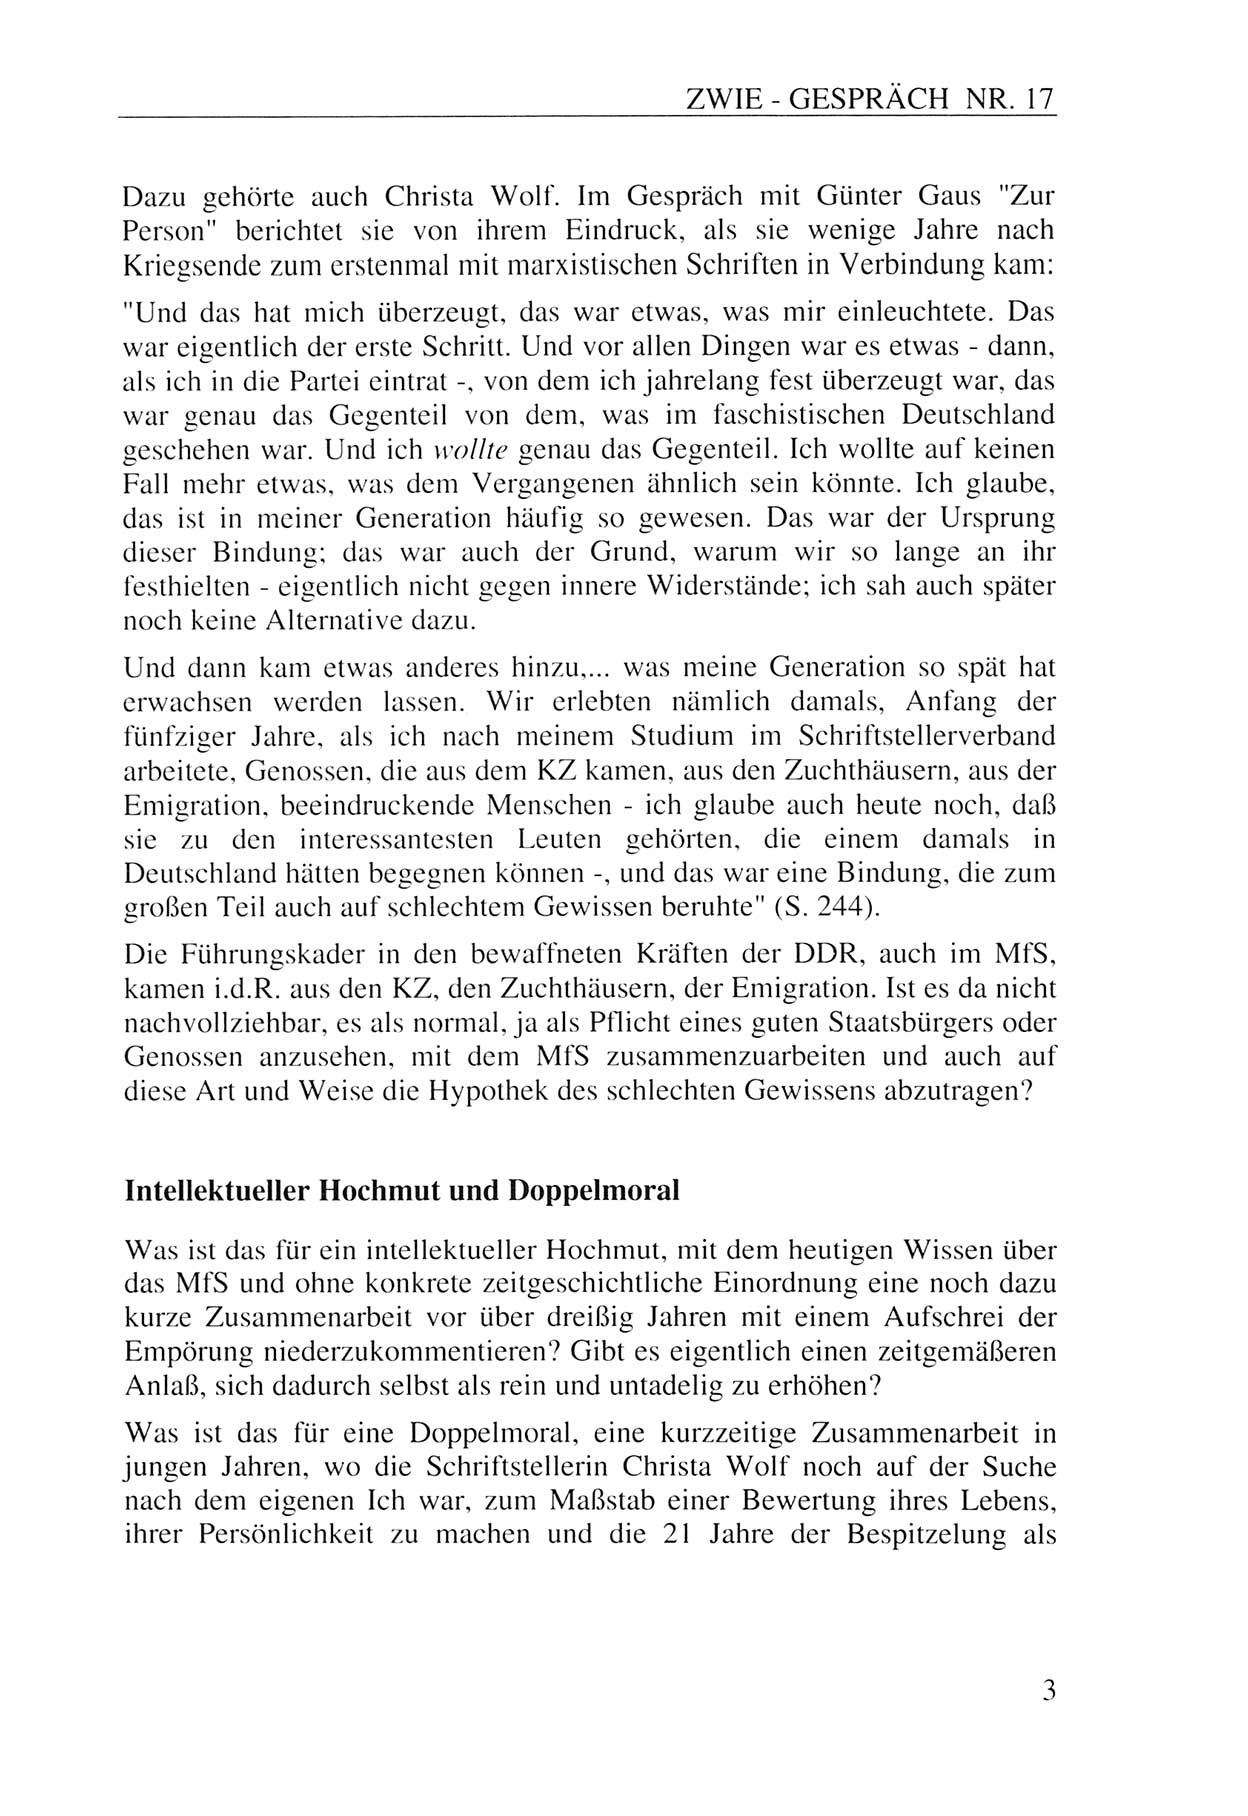 Zwie-Gespräch, Beiträge zur Aufarbeitung der Staatssicherheits-Vergangenheit [Deutsche Demokratische Republik (DDR)], Ausgabe Nr. 17, Berlin 1993, Seite 3 (Zwie-Gespr. Ausg. 17 1993, S. 3)